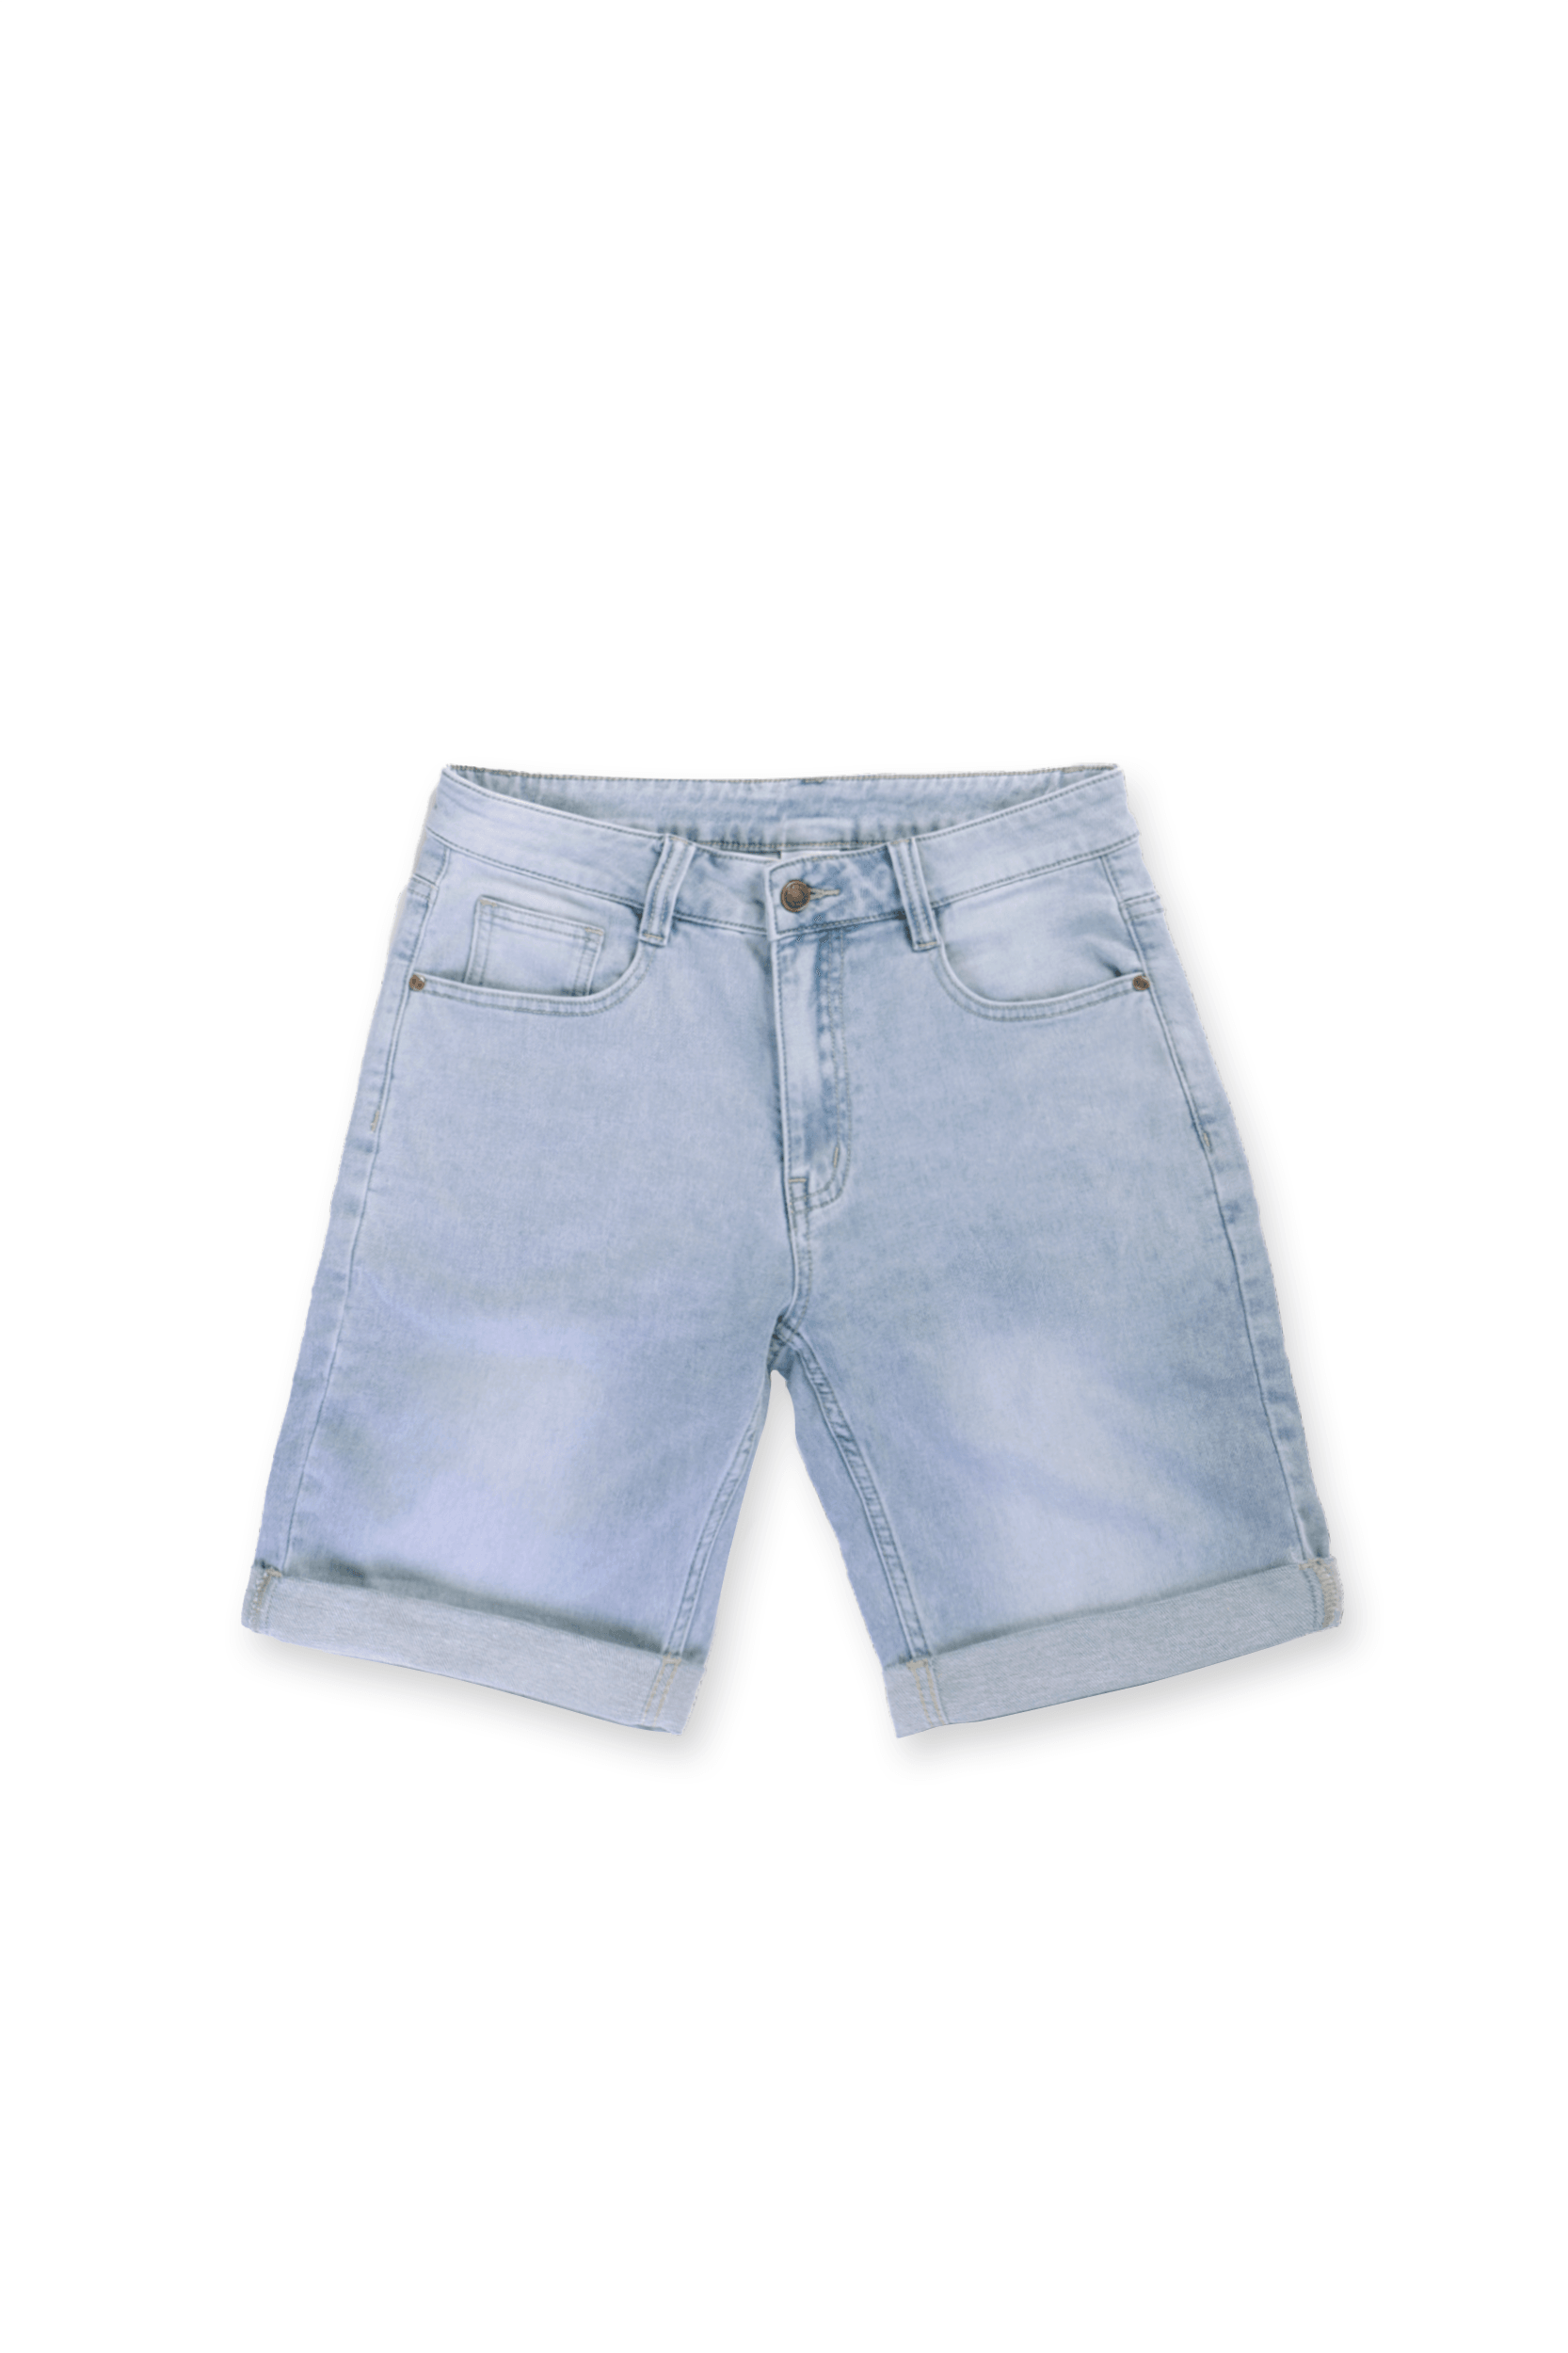 Men's Rolled Hem Denim Shorts - Light Blue - Jed North